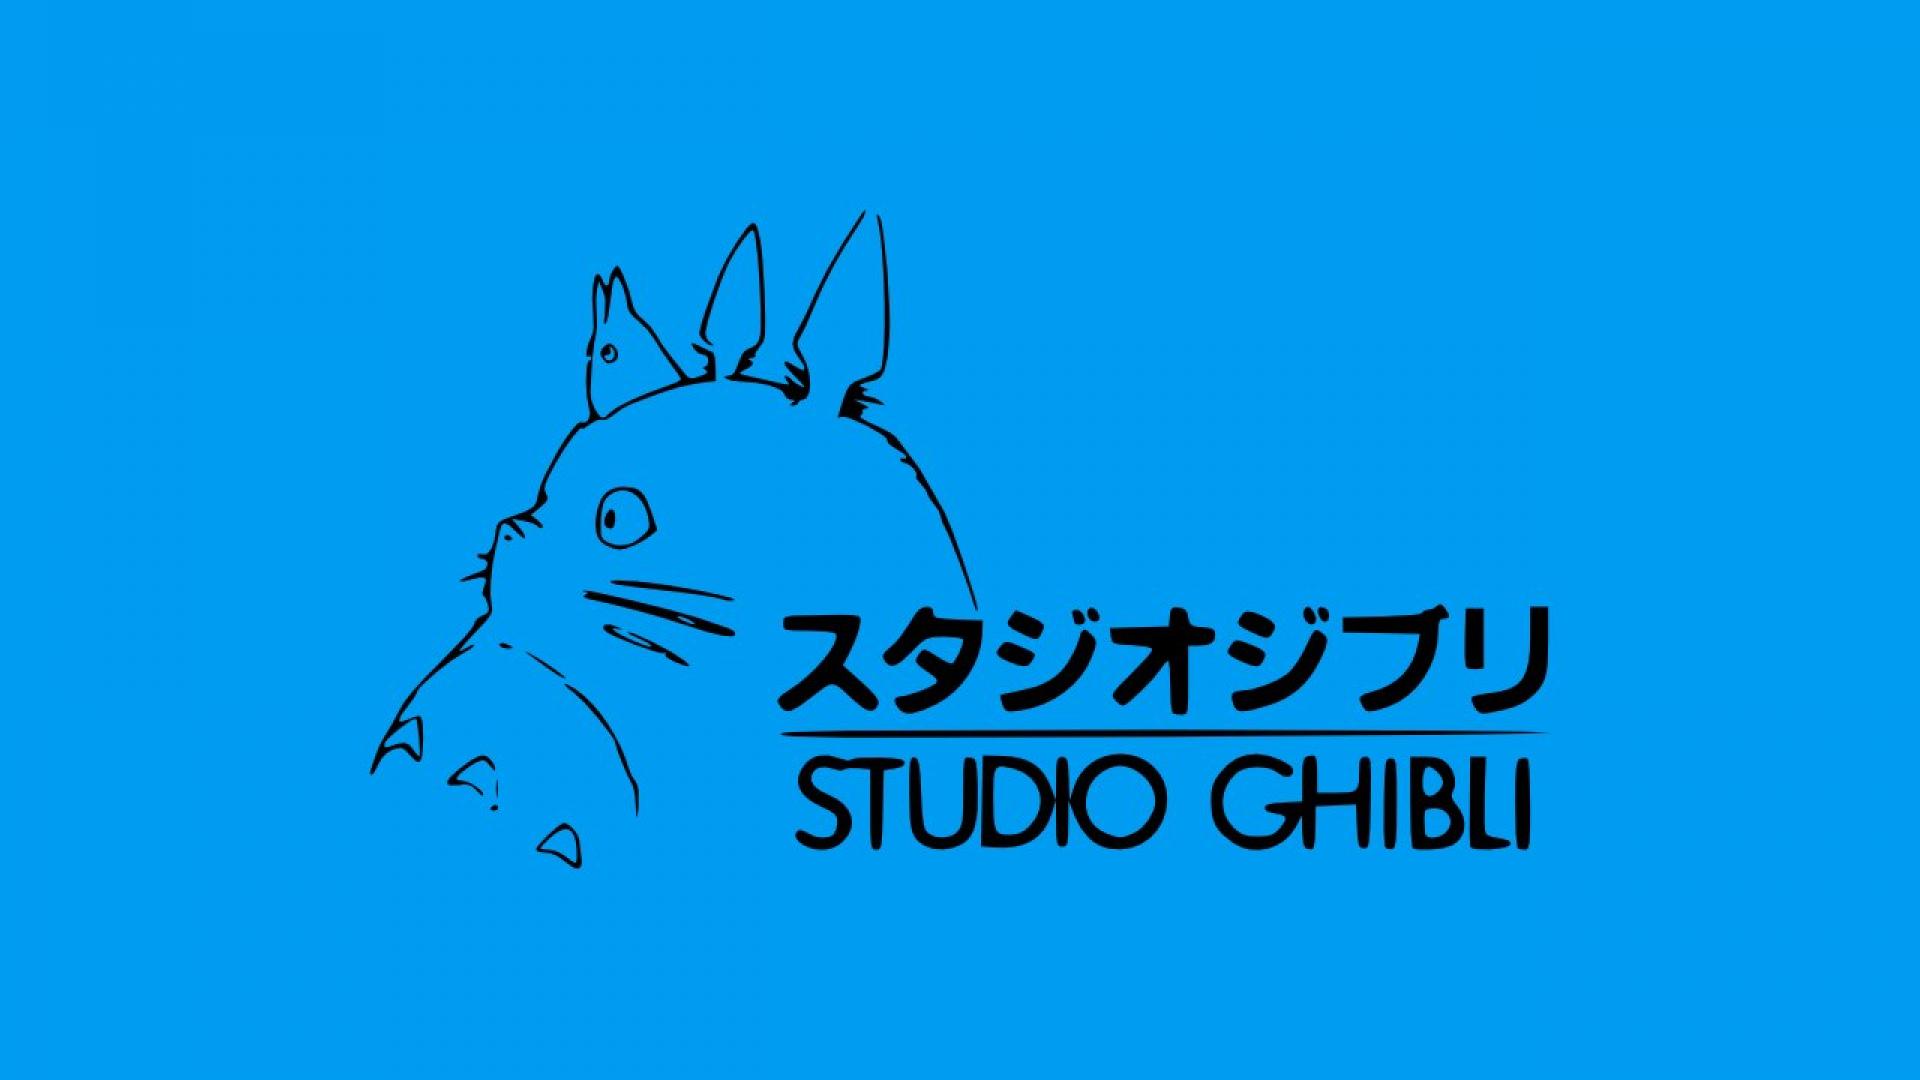 Logo Studio Ghibli Studio GhibliStudio Ghibli Logos